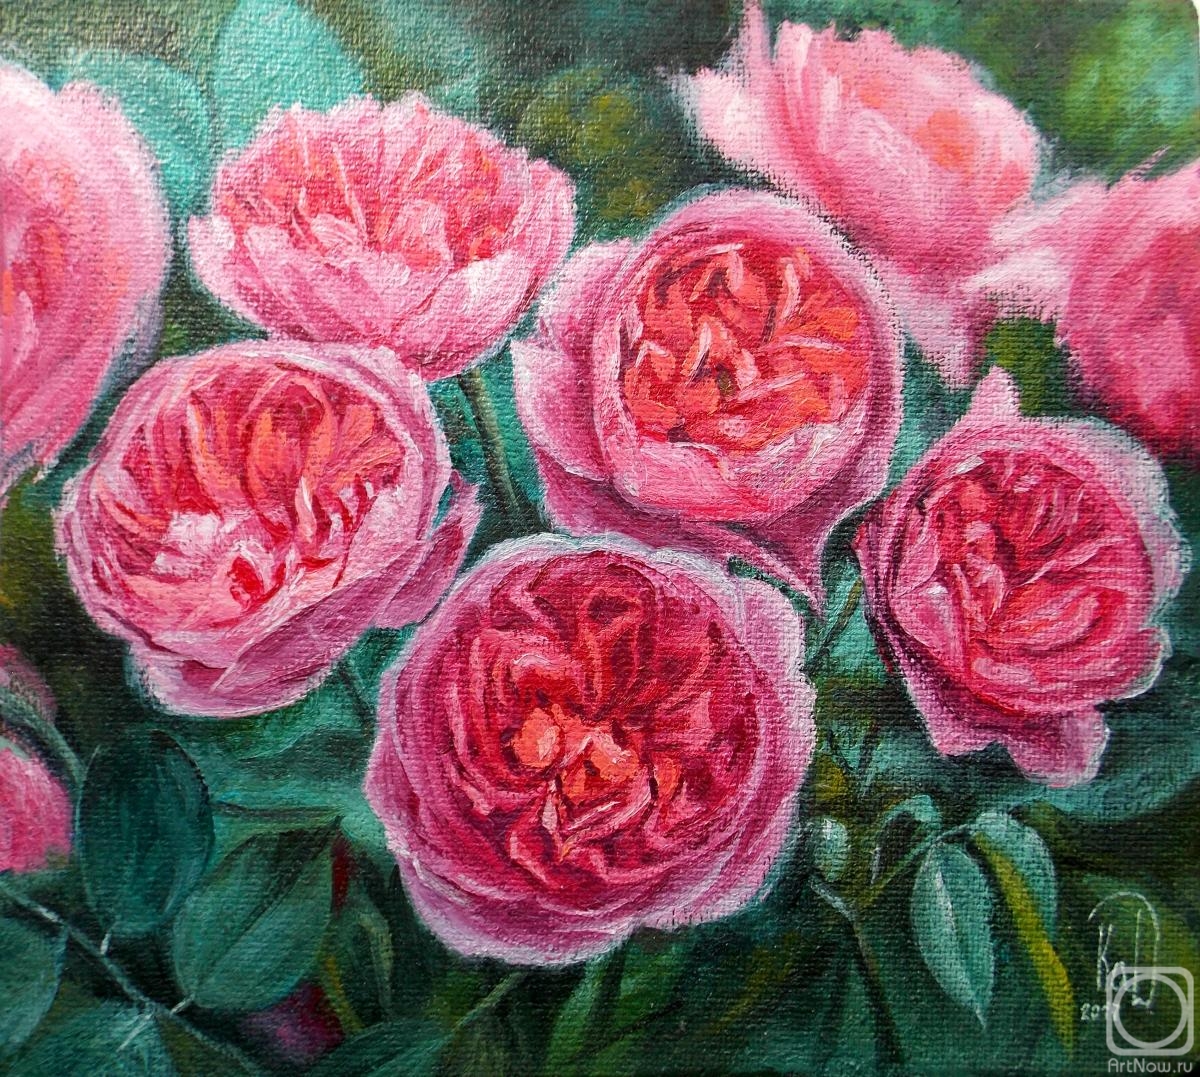 Painting «English rose Boscobel» — buy on ArtNow.ru